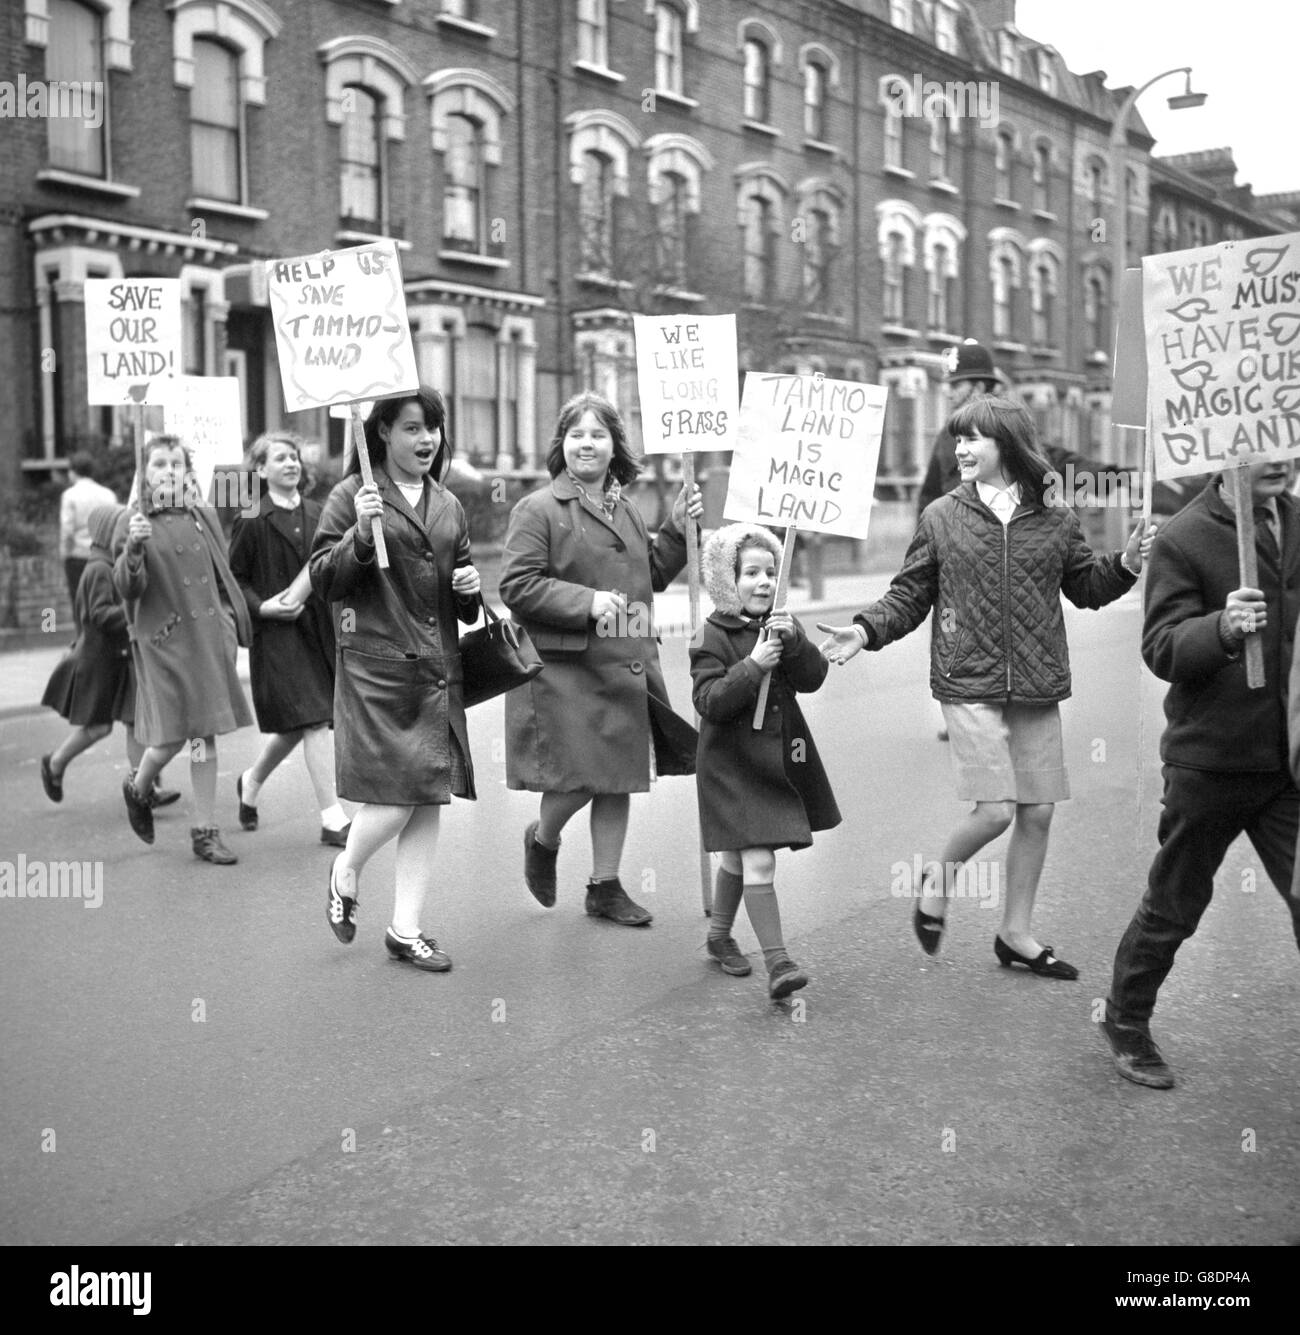 Cuestiones sociales - Protesta Tammoland - Londres Foto de stock